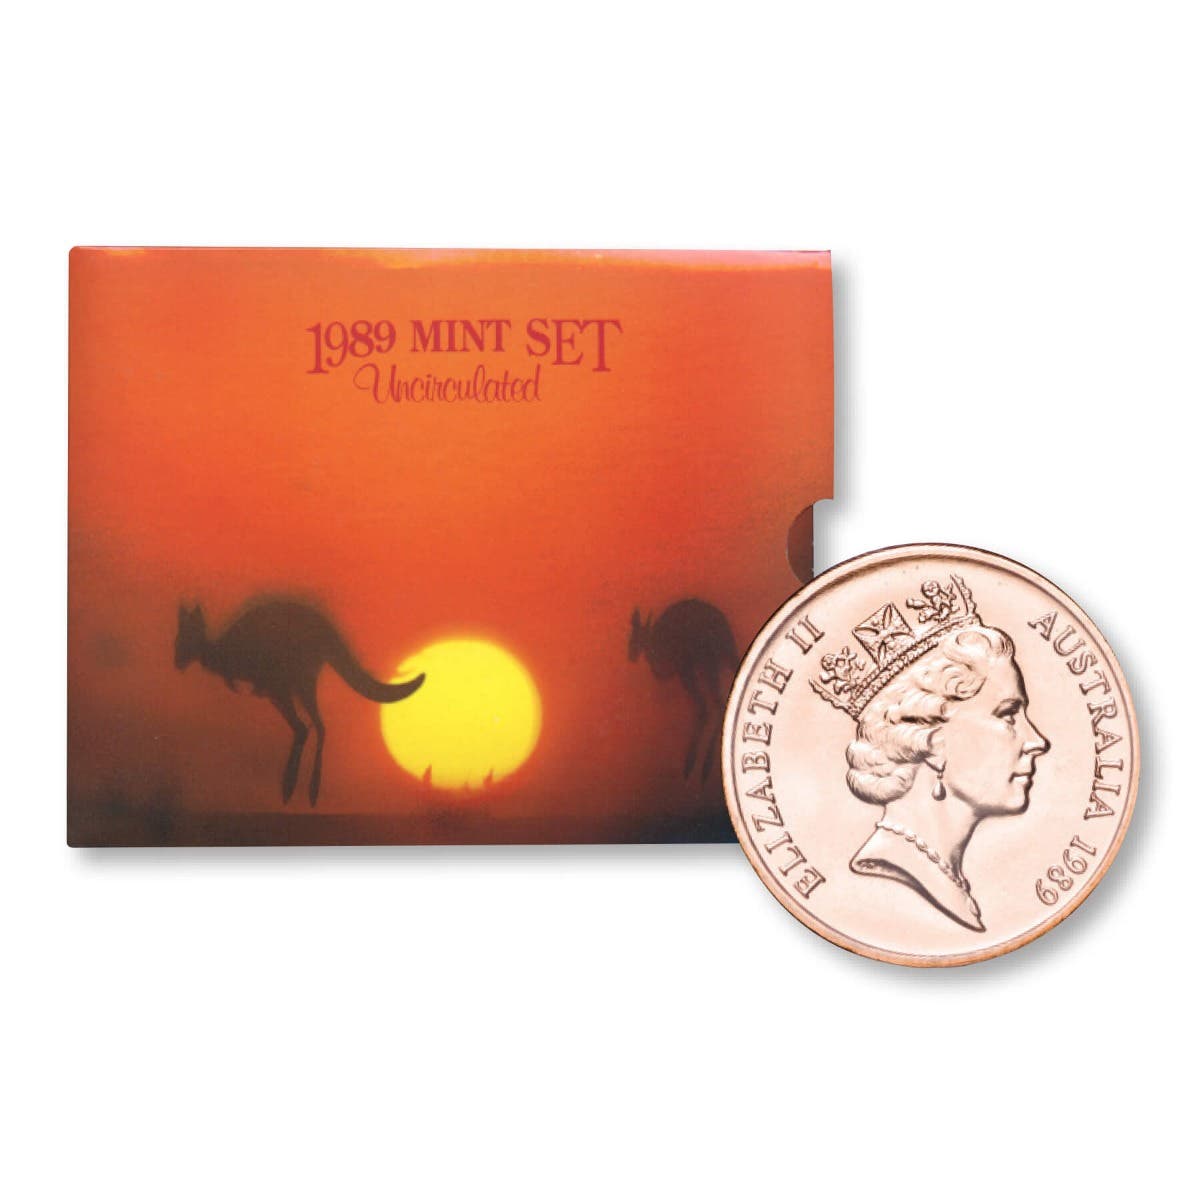 Australia 1989 8-Coin Mint Set